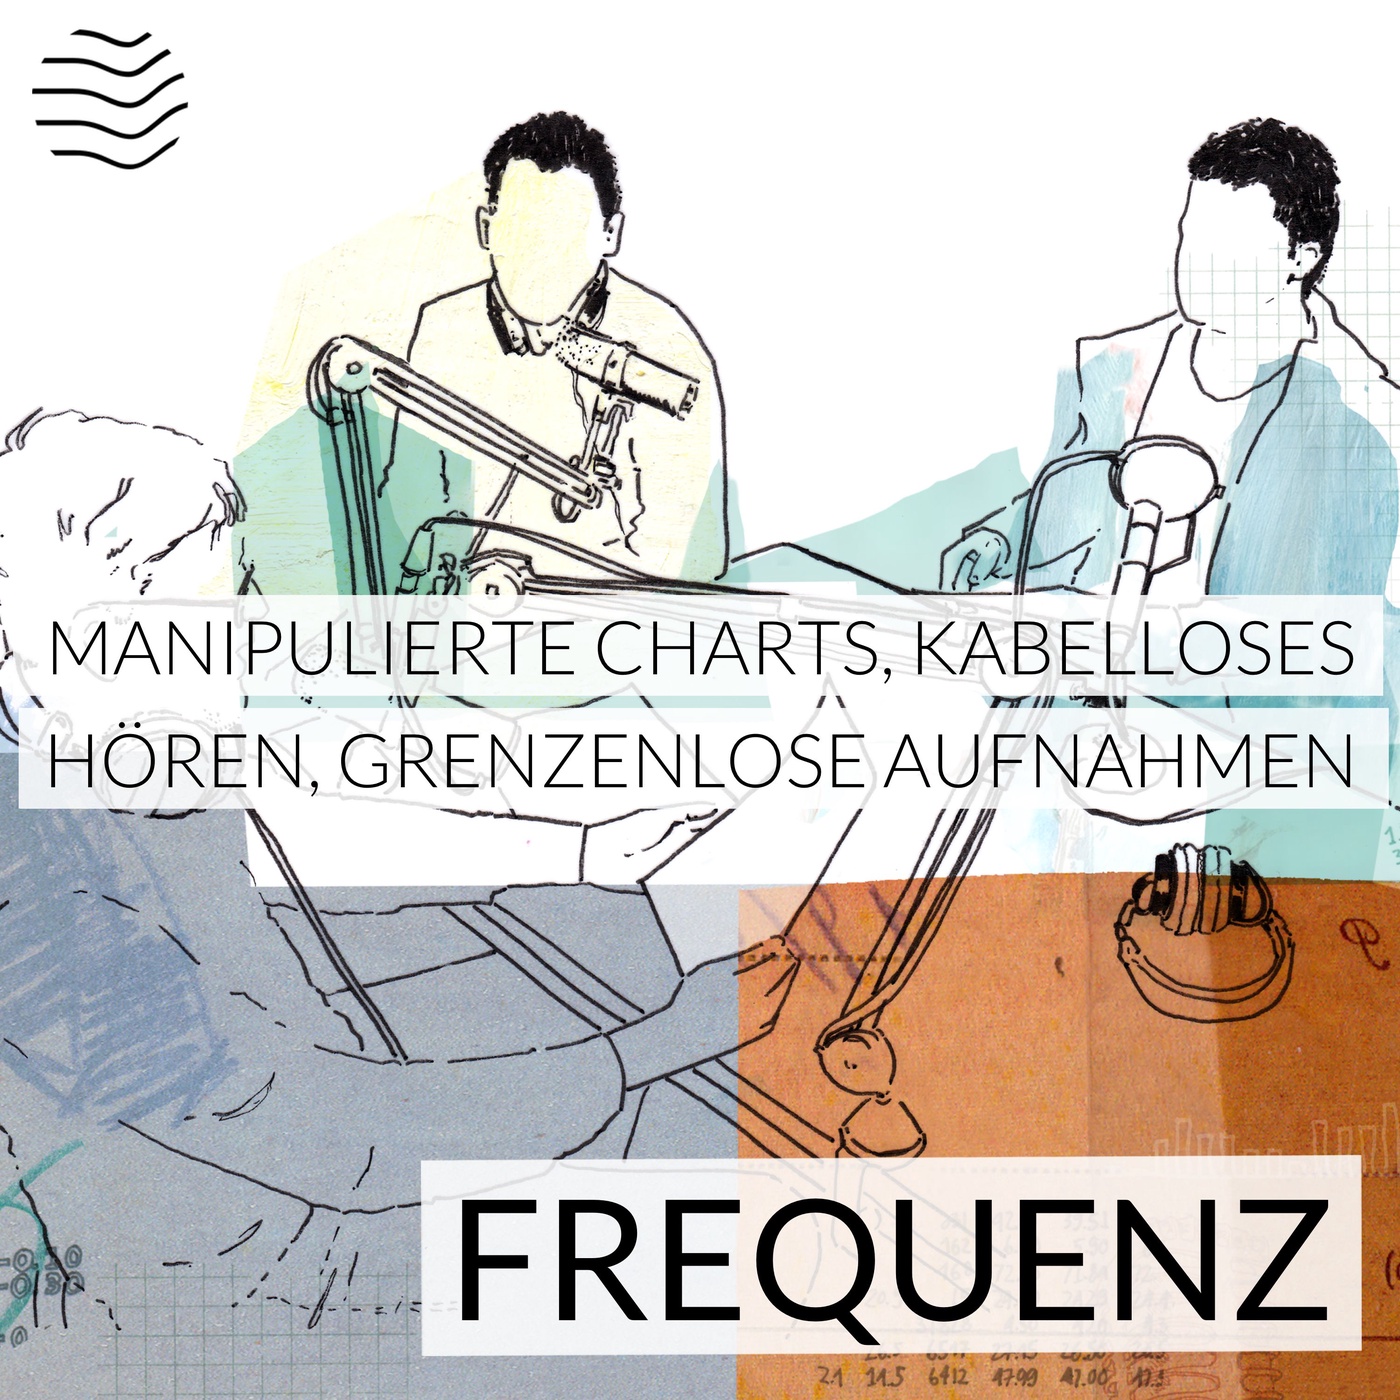 Manipulierte Podcast-Charts, kabelloses Hören (AirPods Pro), grenzenlose Aufnahmen (Zoom F6)